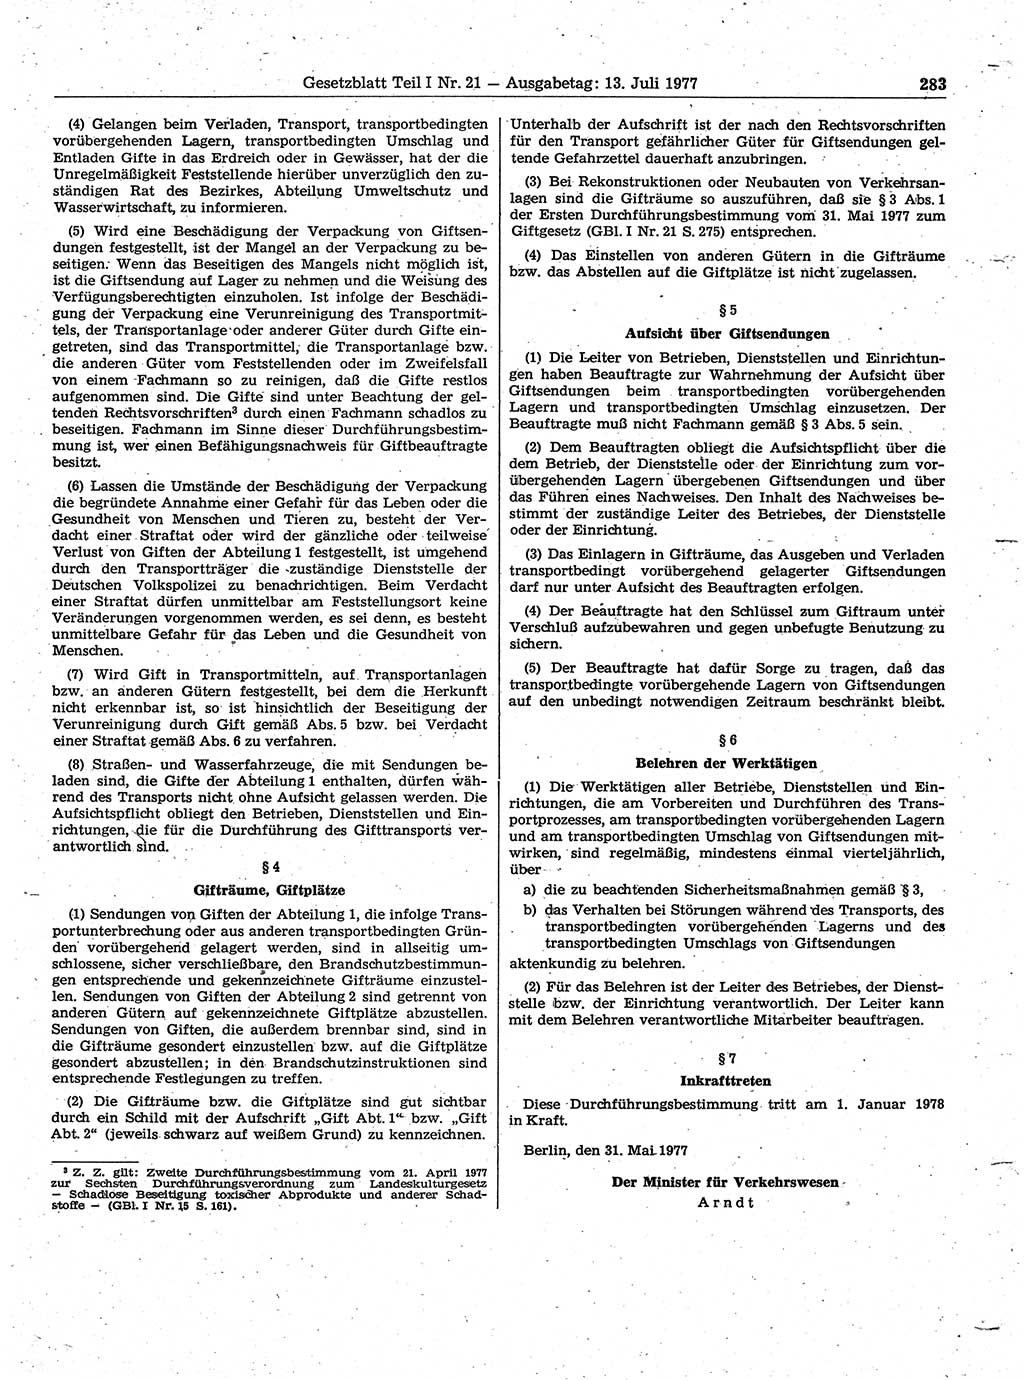 Gesetzblatt (GBl.) der Deutschen Demokratischen Republik (DDR) Teil Ⅰ 1977, Seite 283 (GBl. DDR Ⅰ 1977, S. 283)